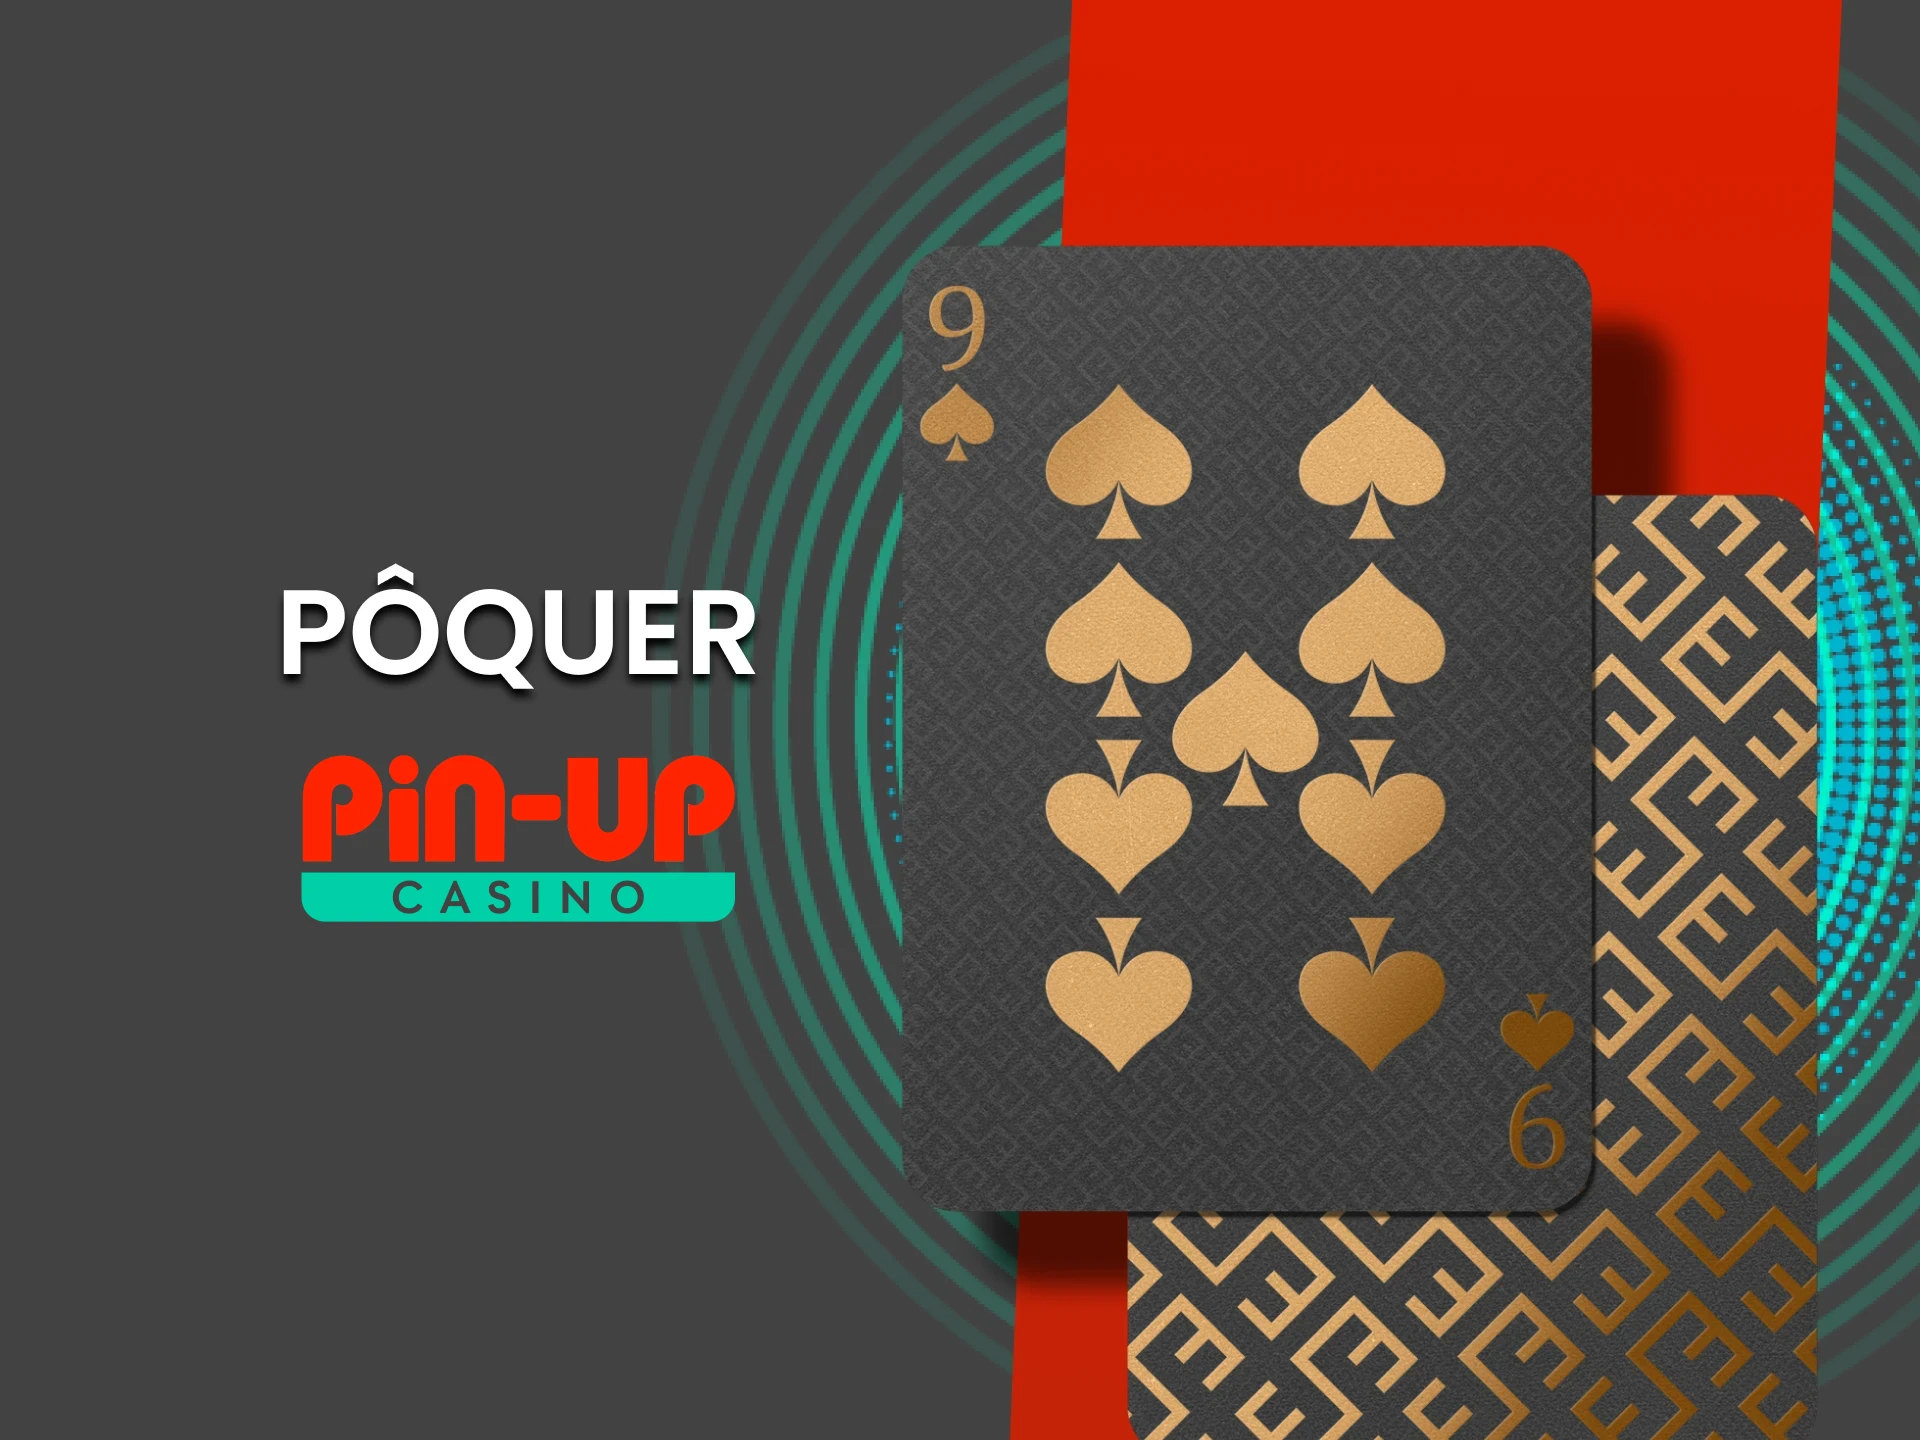 Para jogos de cassino no Pin Up, escolha Poquer.